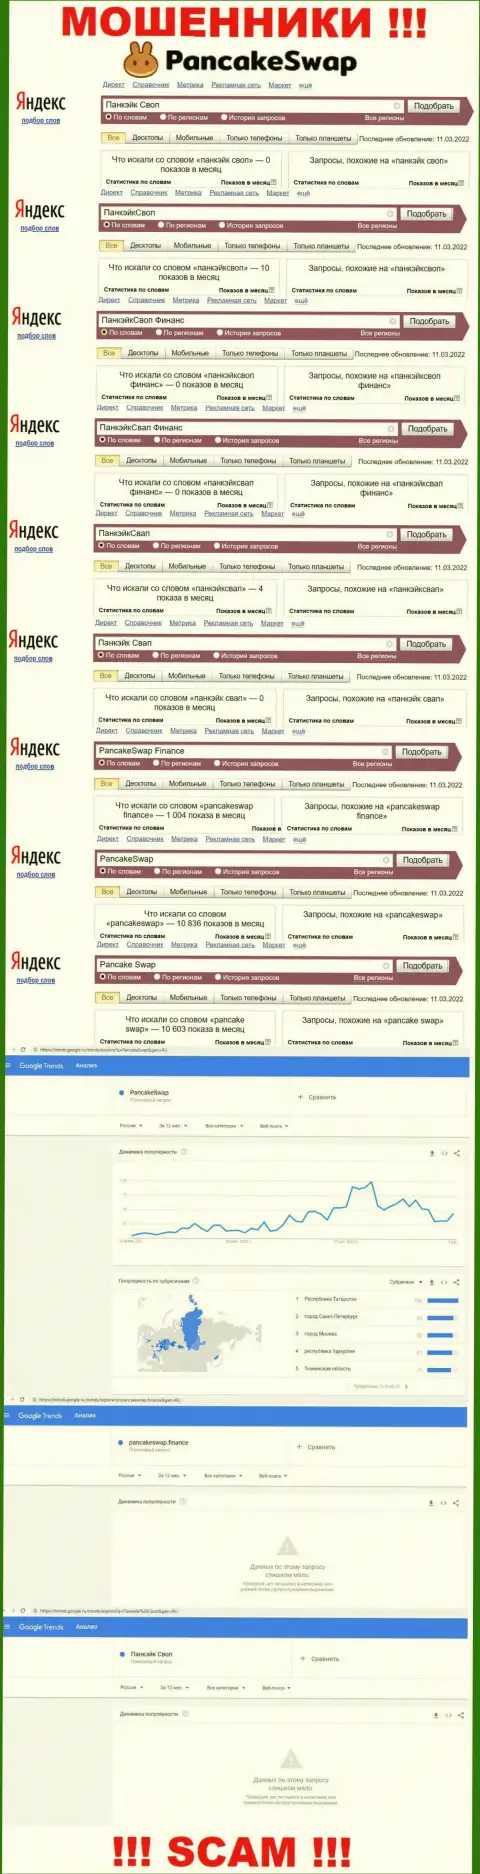 Как часто интересовались мошенниками PancakeSwap Finance в поисковиках интернета ???